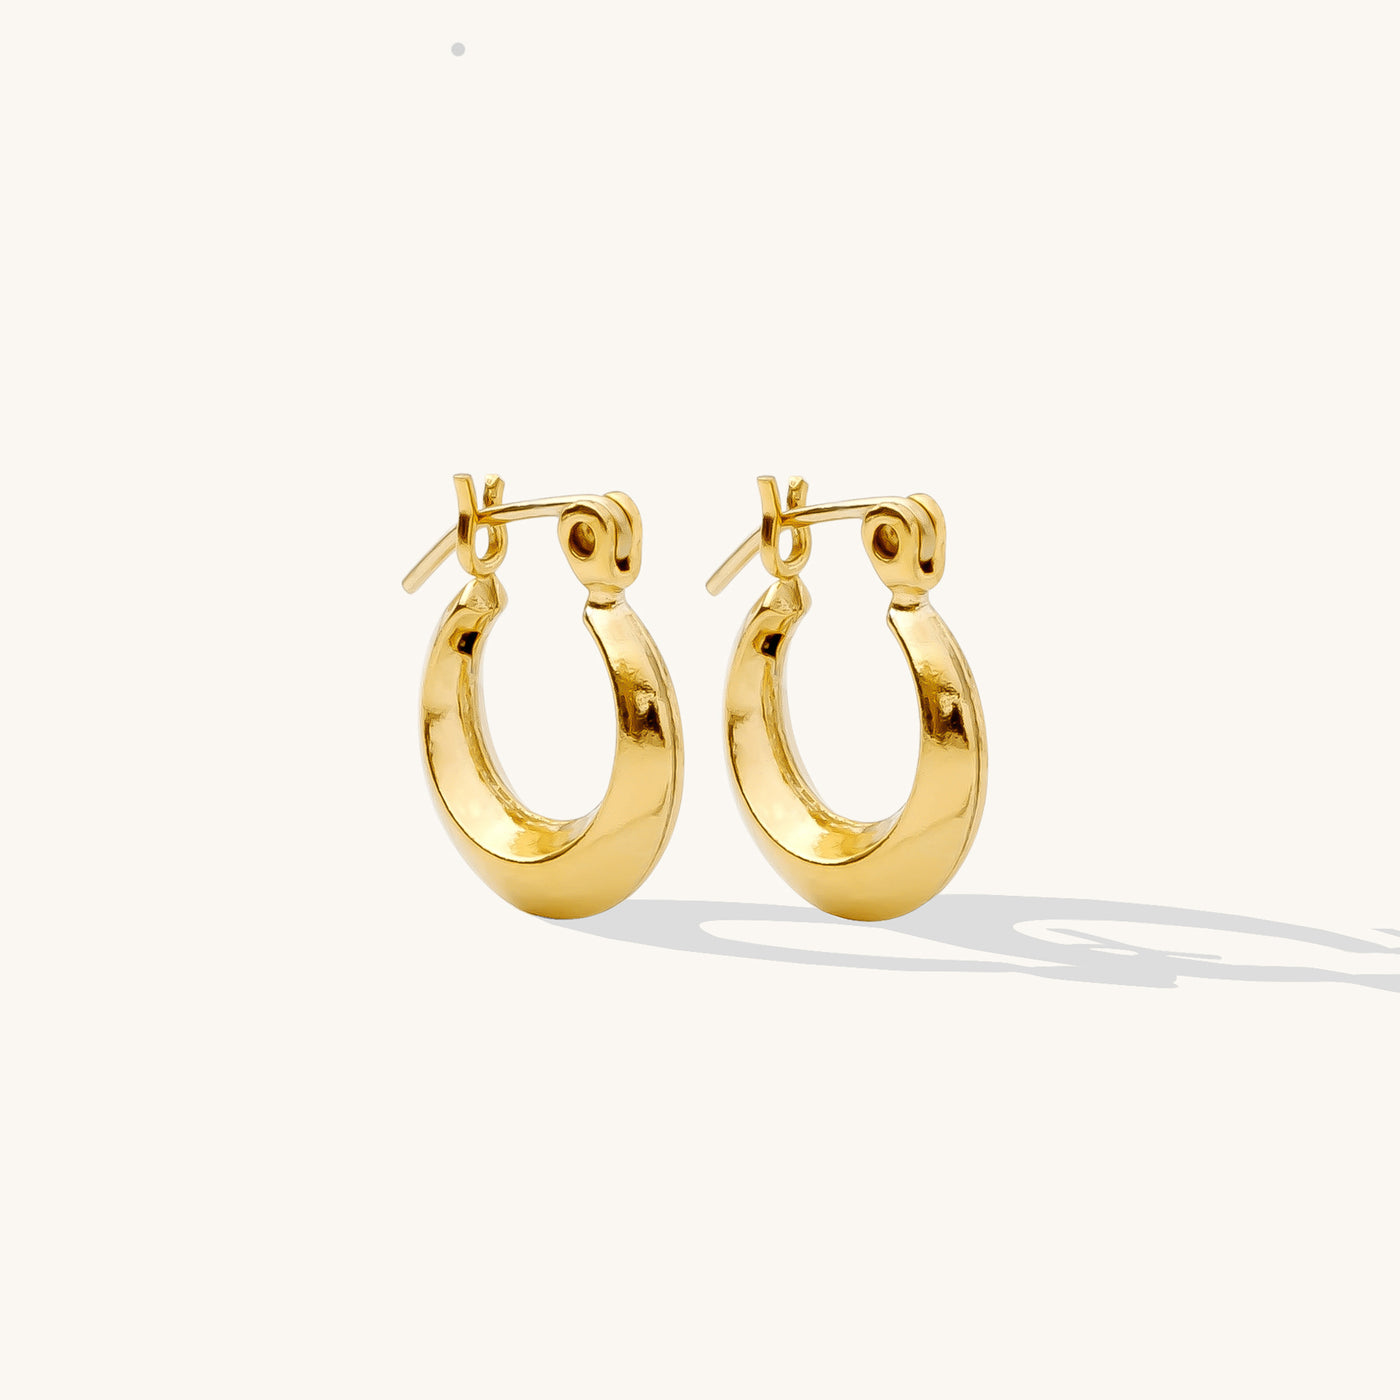 Small Modern Hoop Earrings | Simple & Dainty Jewelry